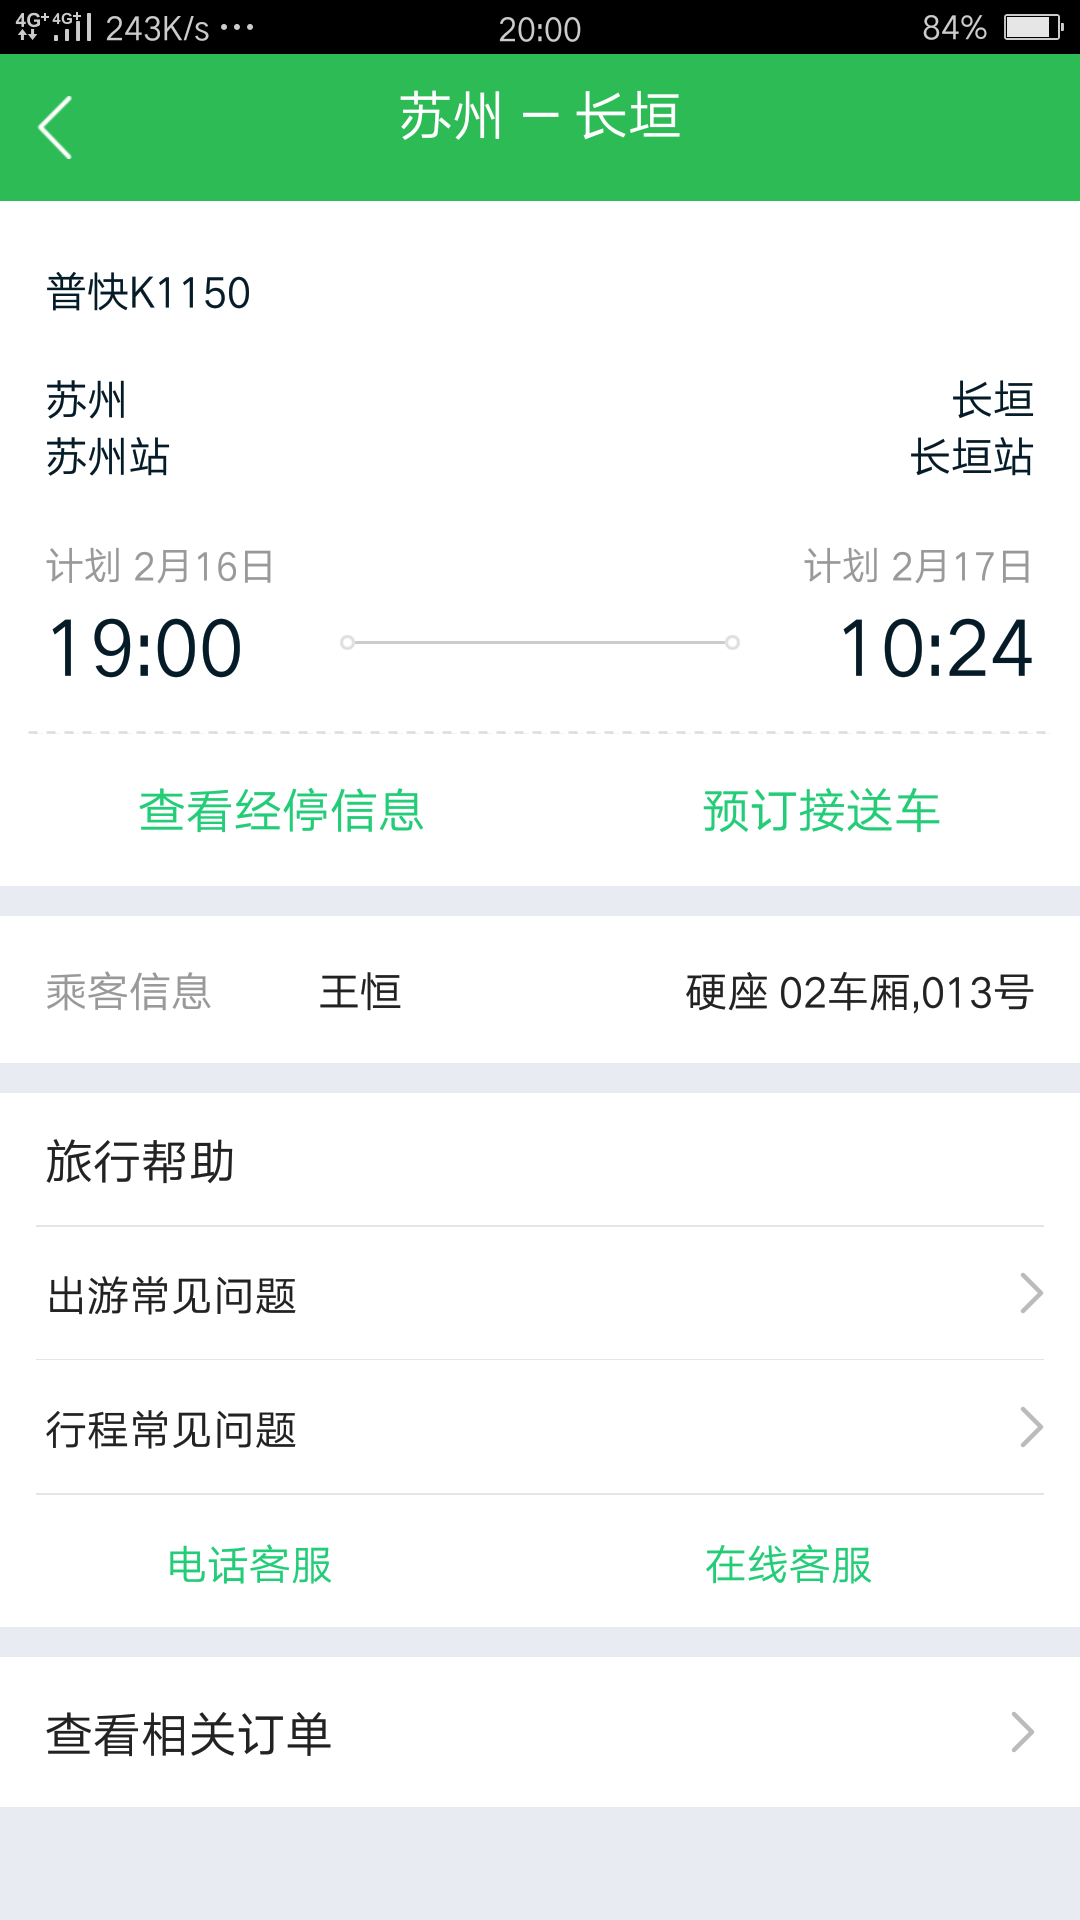 我买了苏州到郑州的火车票但是在网上买的不知道去哪个火车站领